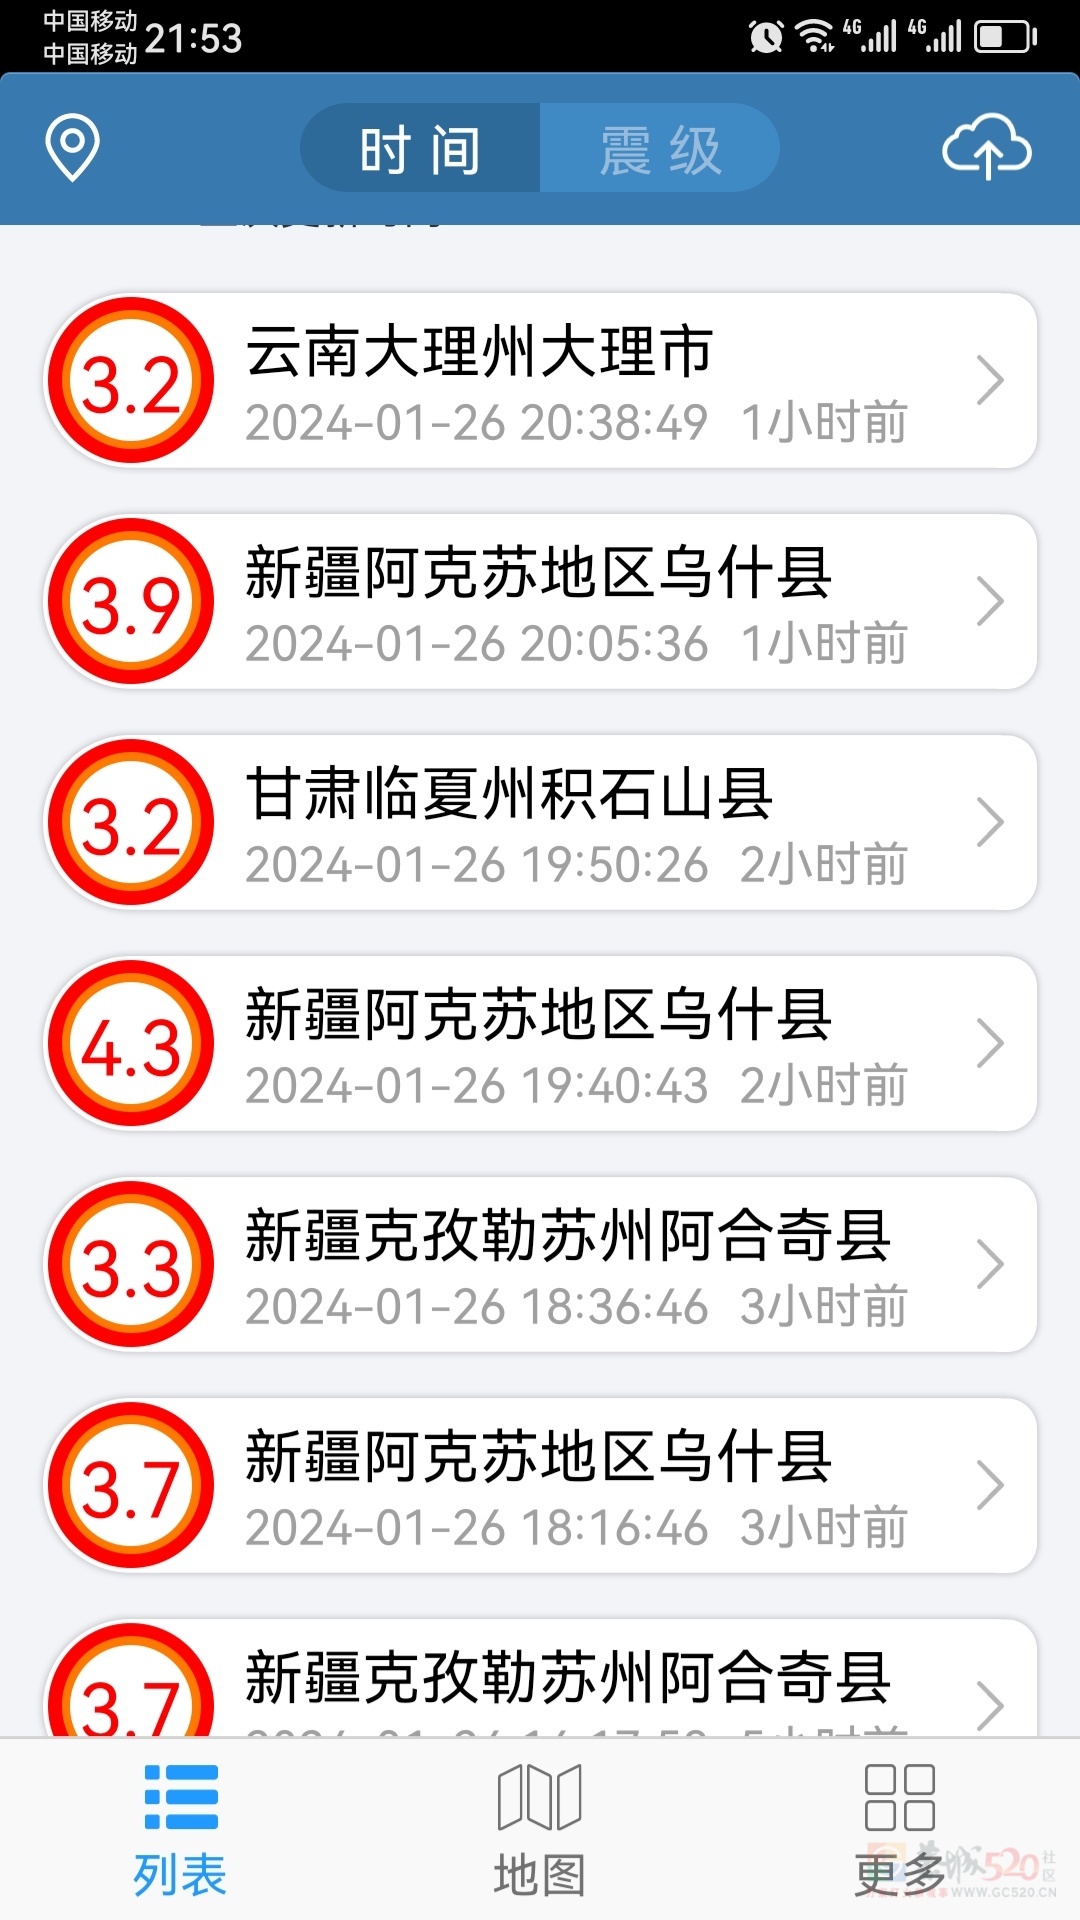 今天晚上8点38分云南大理地震751 / 作者:猛龙 / 帖子ID:313333